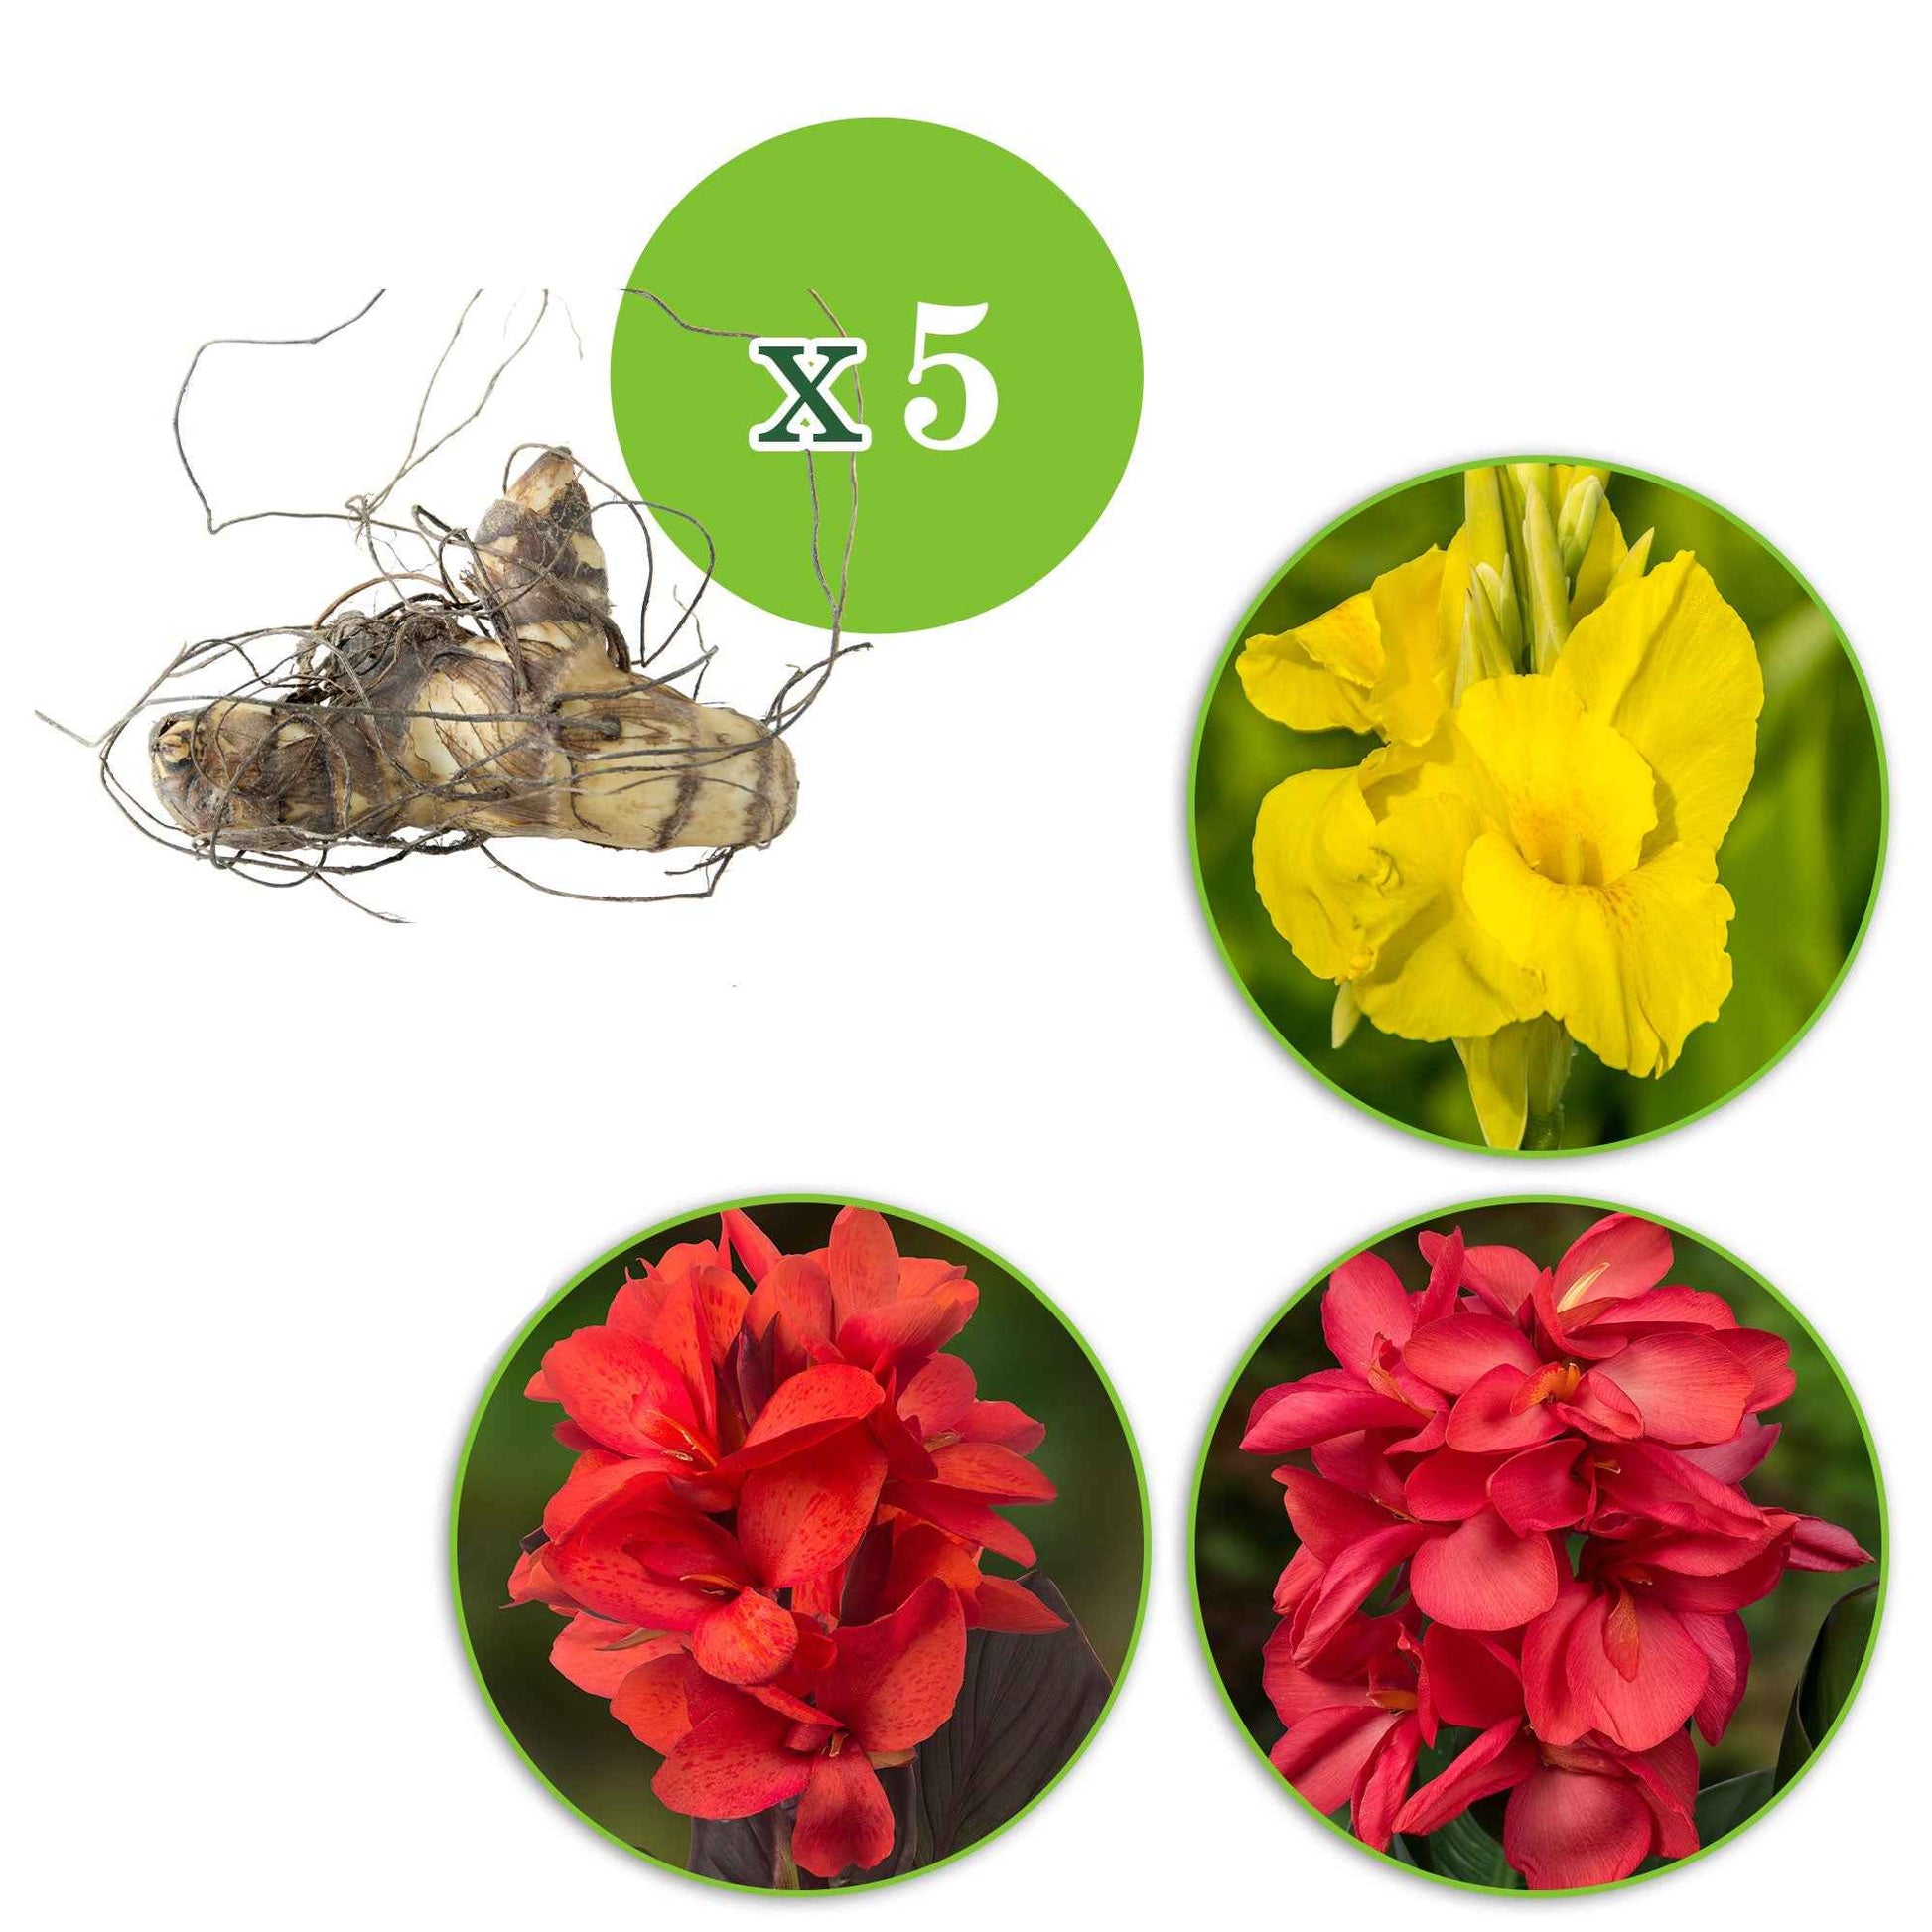 Indisches Blumenrohr Mischung (x5) - Canna 'richard wallace','red dazzler','city of portland' - Blumenzwiebel-pakete